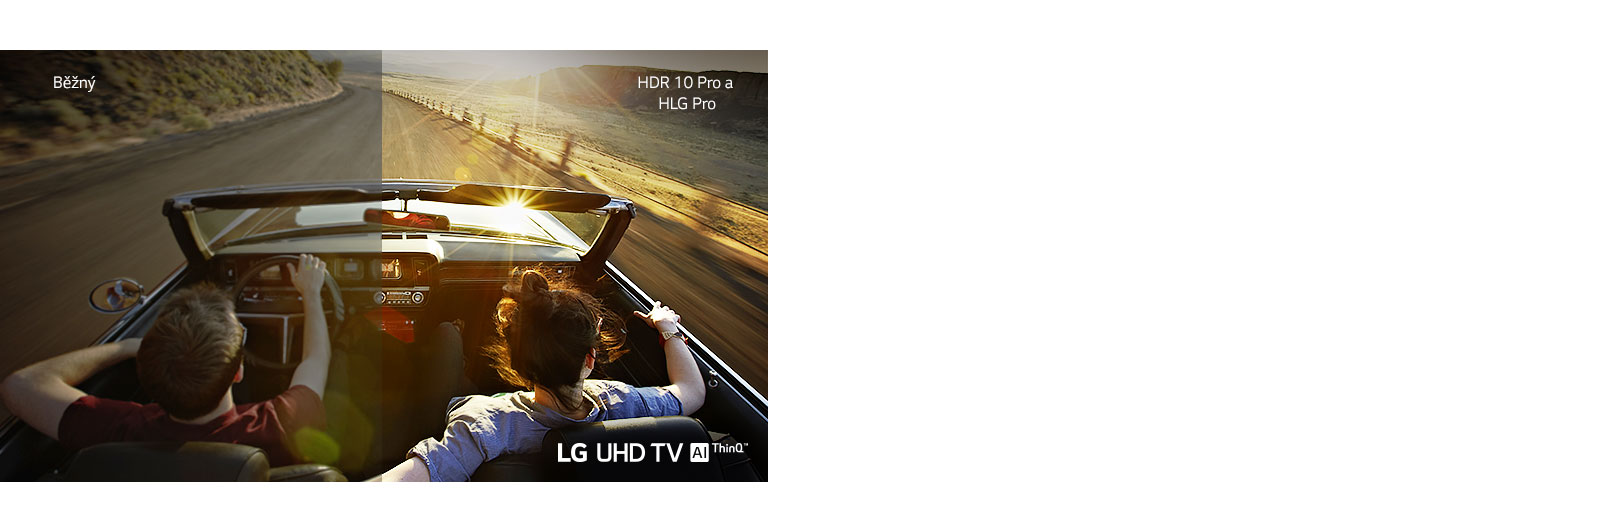 Pár ve vozidle jedoucí po silnici. Polovina je zobrazena na běžném obrazovce s nízkou kvalitou obrazu. Druhá polovina je v ostré a živé kvalitě obrazu televizoru LG UHD.